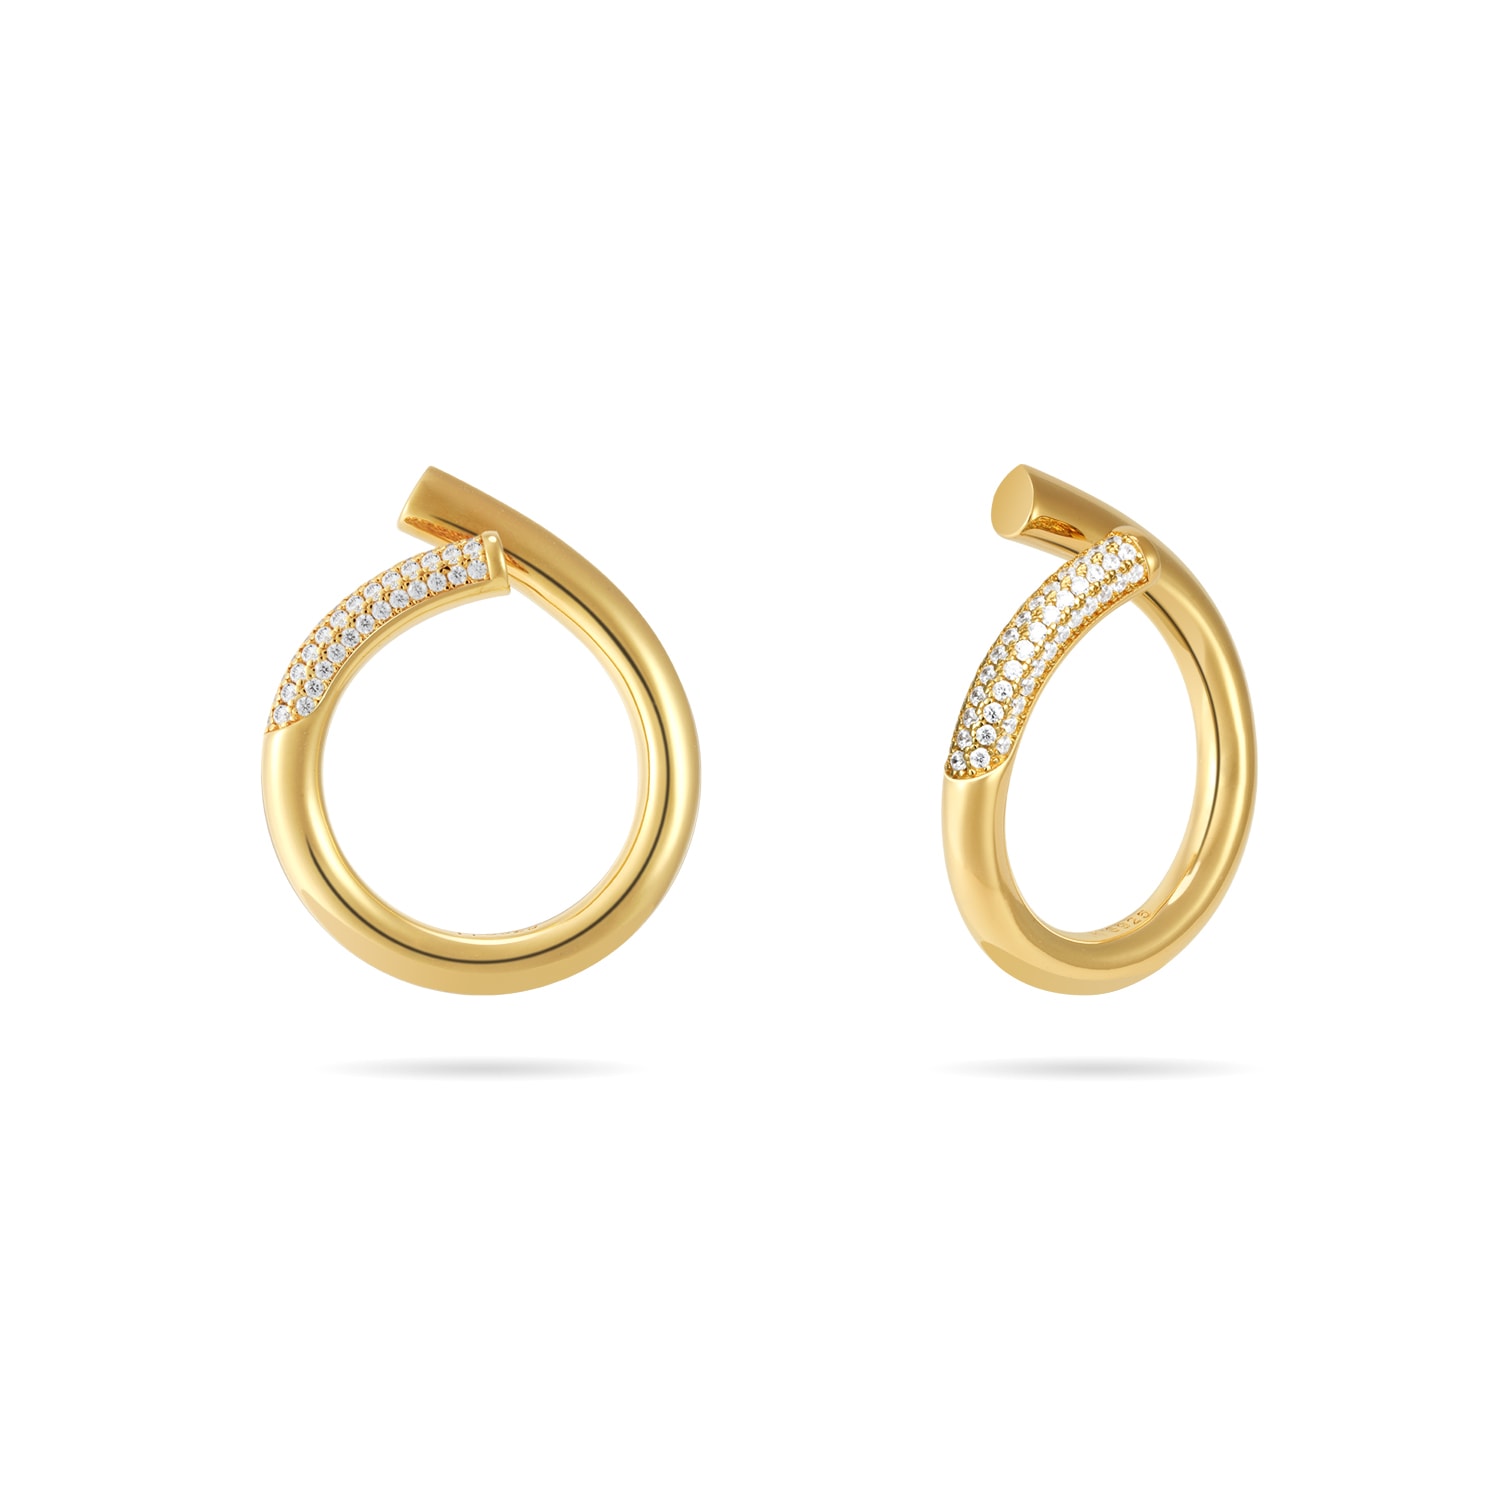 Meulien Women's Gold / White Open Twist Waterdrop Ring - Gold, Clear Stone